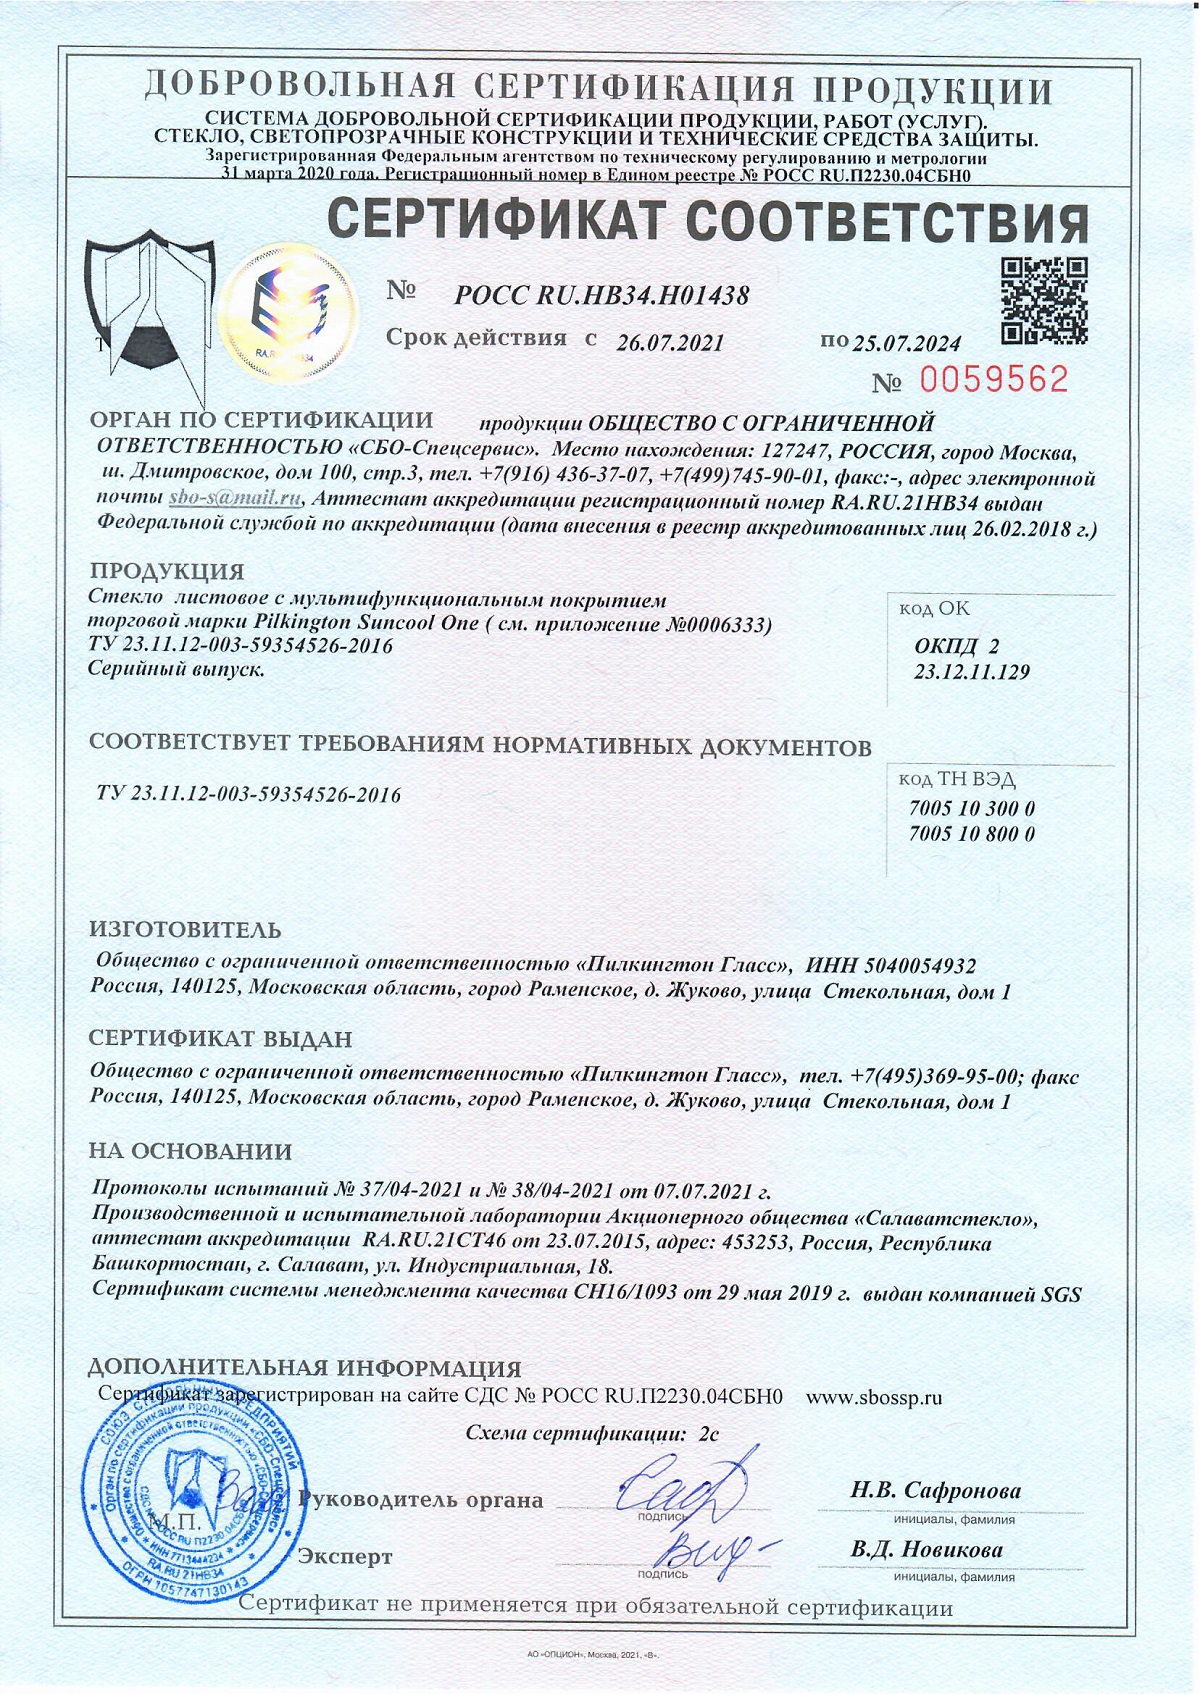 Сертификат соответствия Линейка Pilkington Suncool One_Страница_1 - 25.07.2024